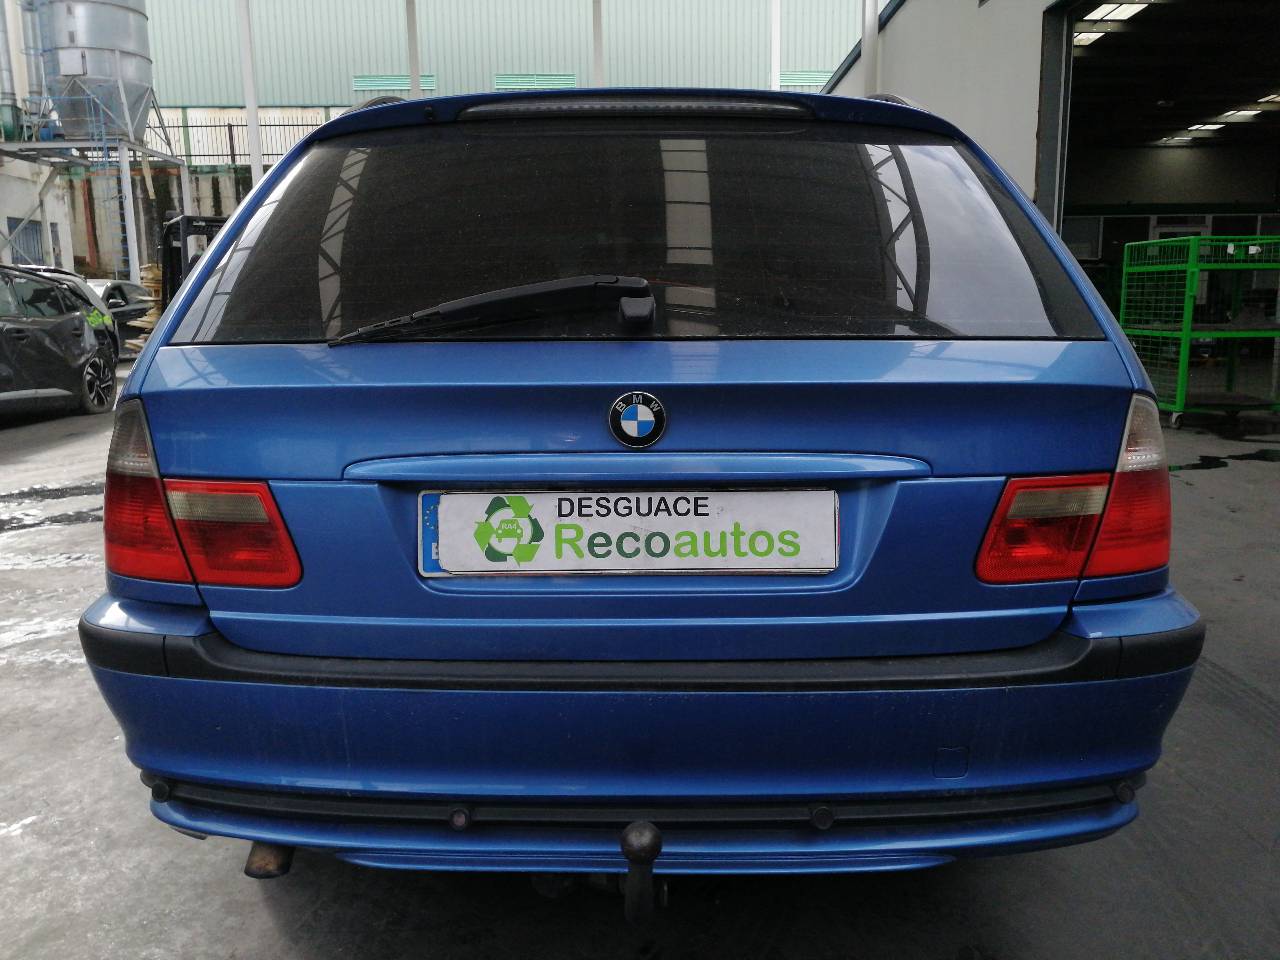 BMW 3 Series E46 (1997-2006) Ratlankis (ratas) 5161178991304, R178JJX17H2ET35, ALUMINIO10P 24222929